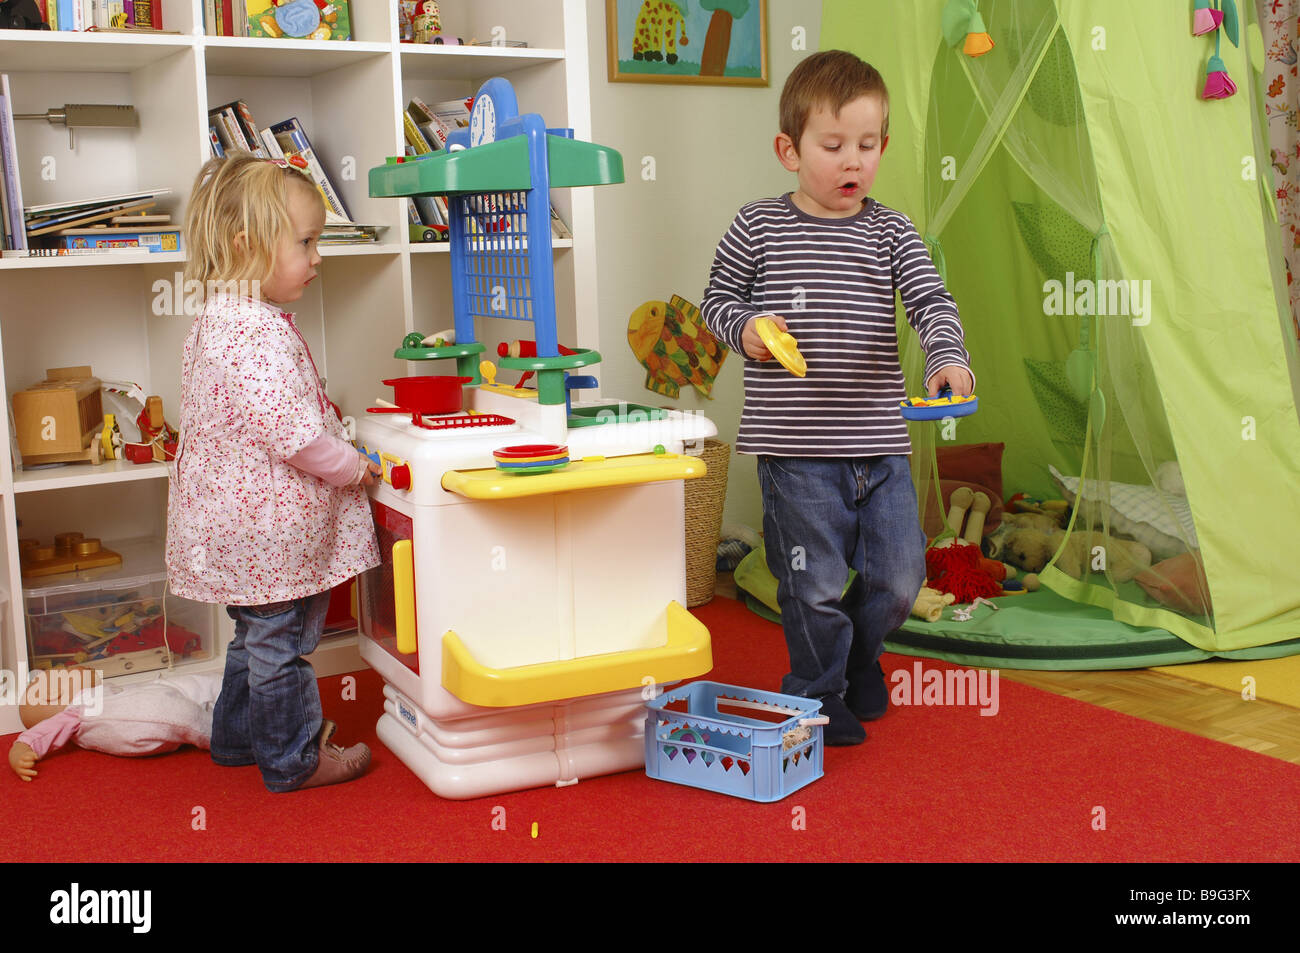 Kinderzimmer junge Mädchen Spielzeug-spielen zusammen Küchenserie Menschen  Kinder zwei Geschwister Bruder Schwester Kunststoff-Herd Spielzeug-Küche  Stockfotografie - Alamy